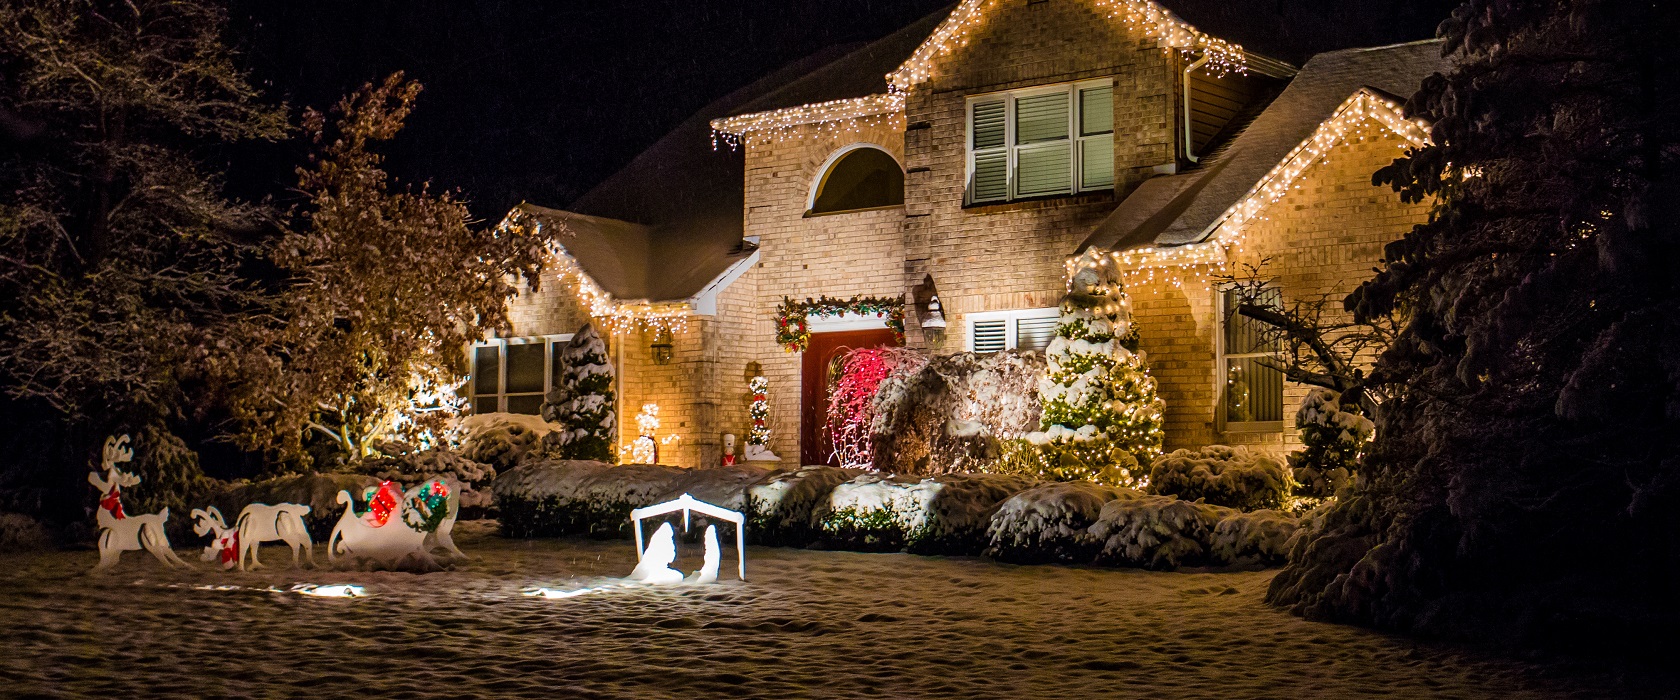 weihnachtliches geschmücktes Haus nach amerikanischem Vorbild bei Nacht